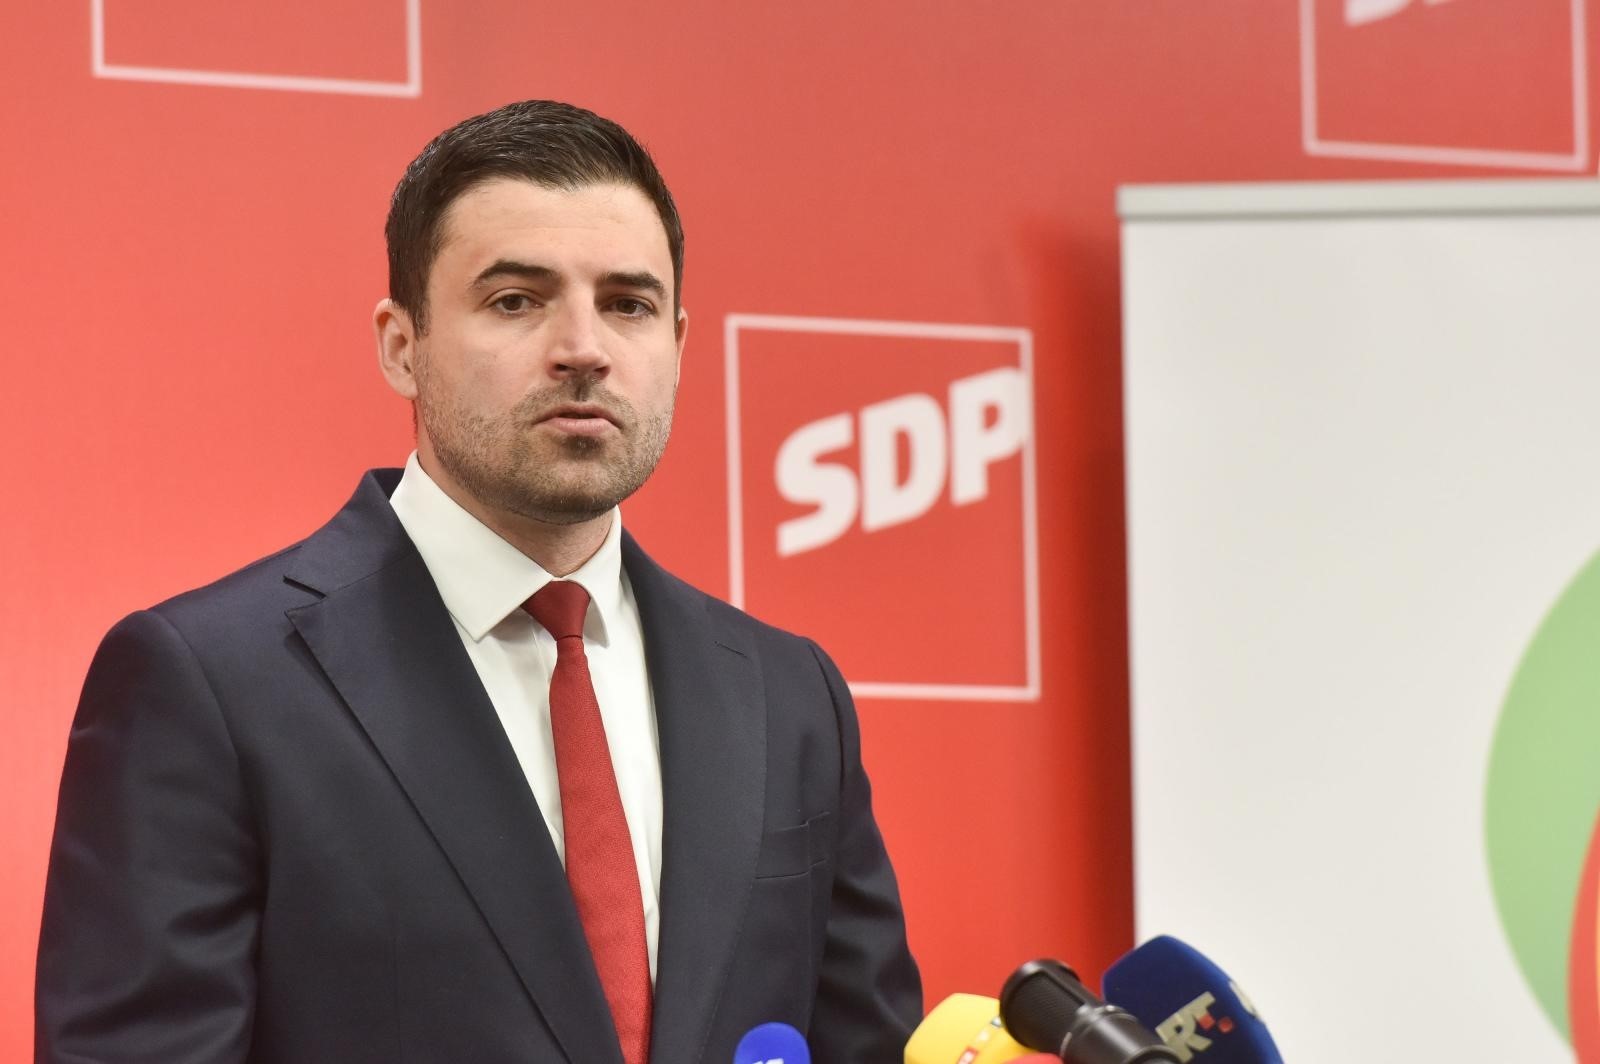 09.05.2020., Zagreb - U sjedistu SDP-a predstavljena RESTART koalicija koju cine SDP, HSU, HSS, SNAGA i GLAS. Davor Bernardic. Photo: Davorin Visnjic/PIXSELL